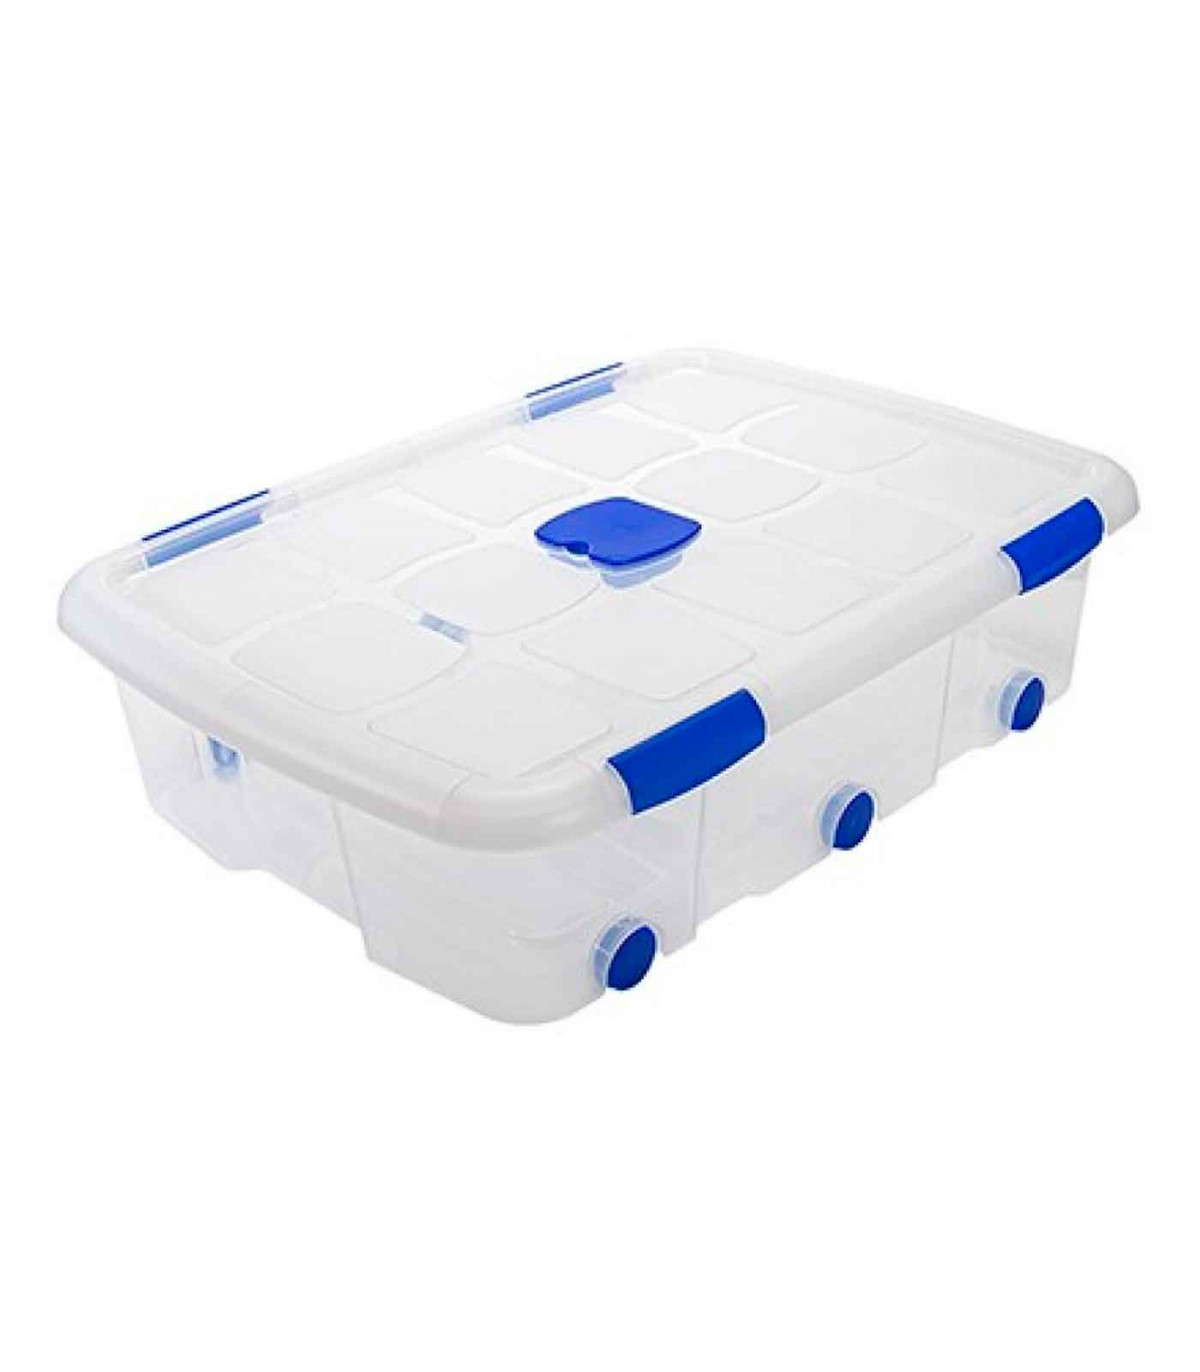 Caja de ordenación de plástico nº 14 transparente, con tapa, ruedas y asas,  capacidad 56 litros, 20.5 x 76.8 x 56.5